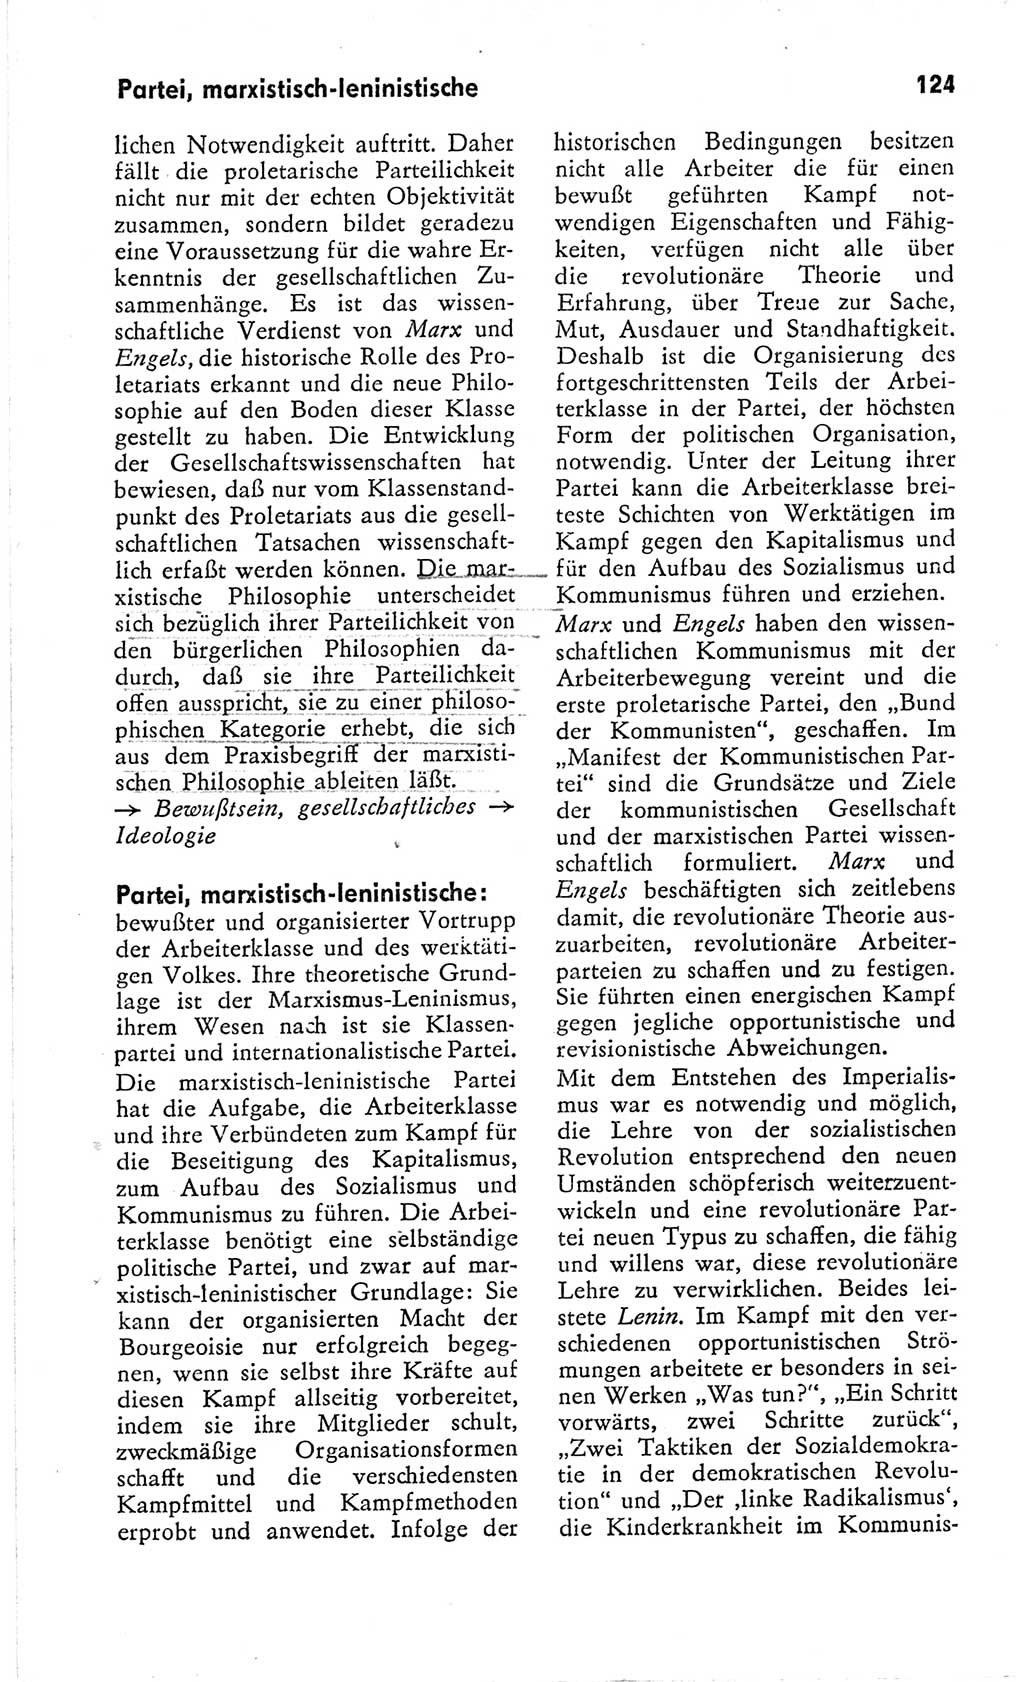 Kleines Wörterbuch der marxistisch-leninistischen Philosophie [Deutsche Demokratische Republik (DDR)] 1966, Seite 124 (Kl. Wb. ML Phil. DDR 1966, S. 124)